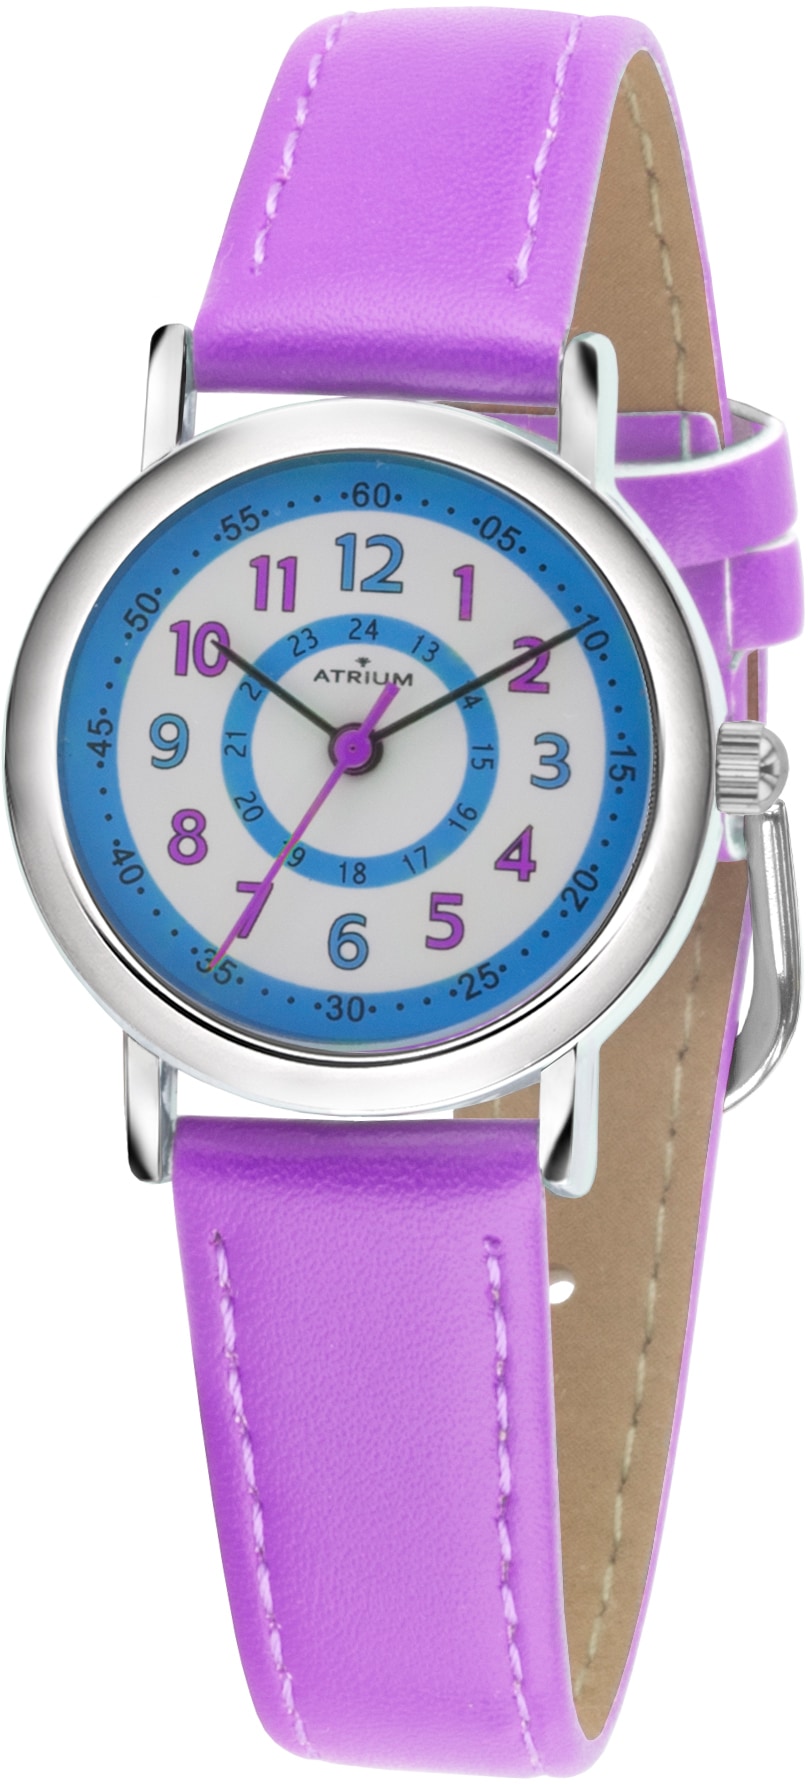 Quarzuhr »A31-108«, Armbanduhr, Kinderuhr, Mädchenuhr, ideal auch als Geschenk